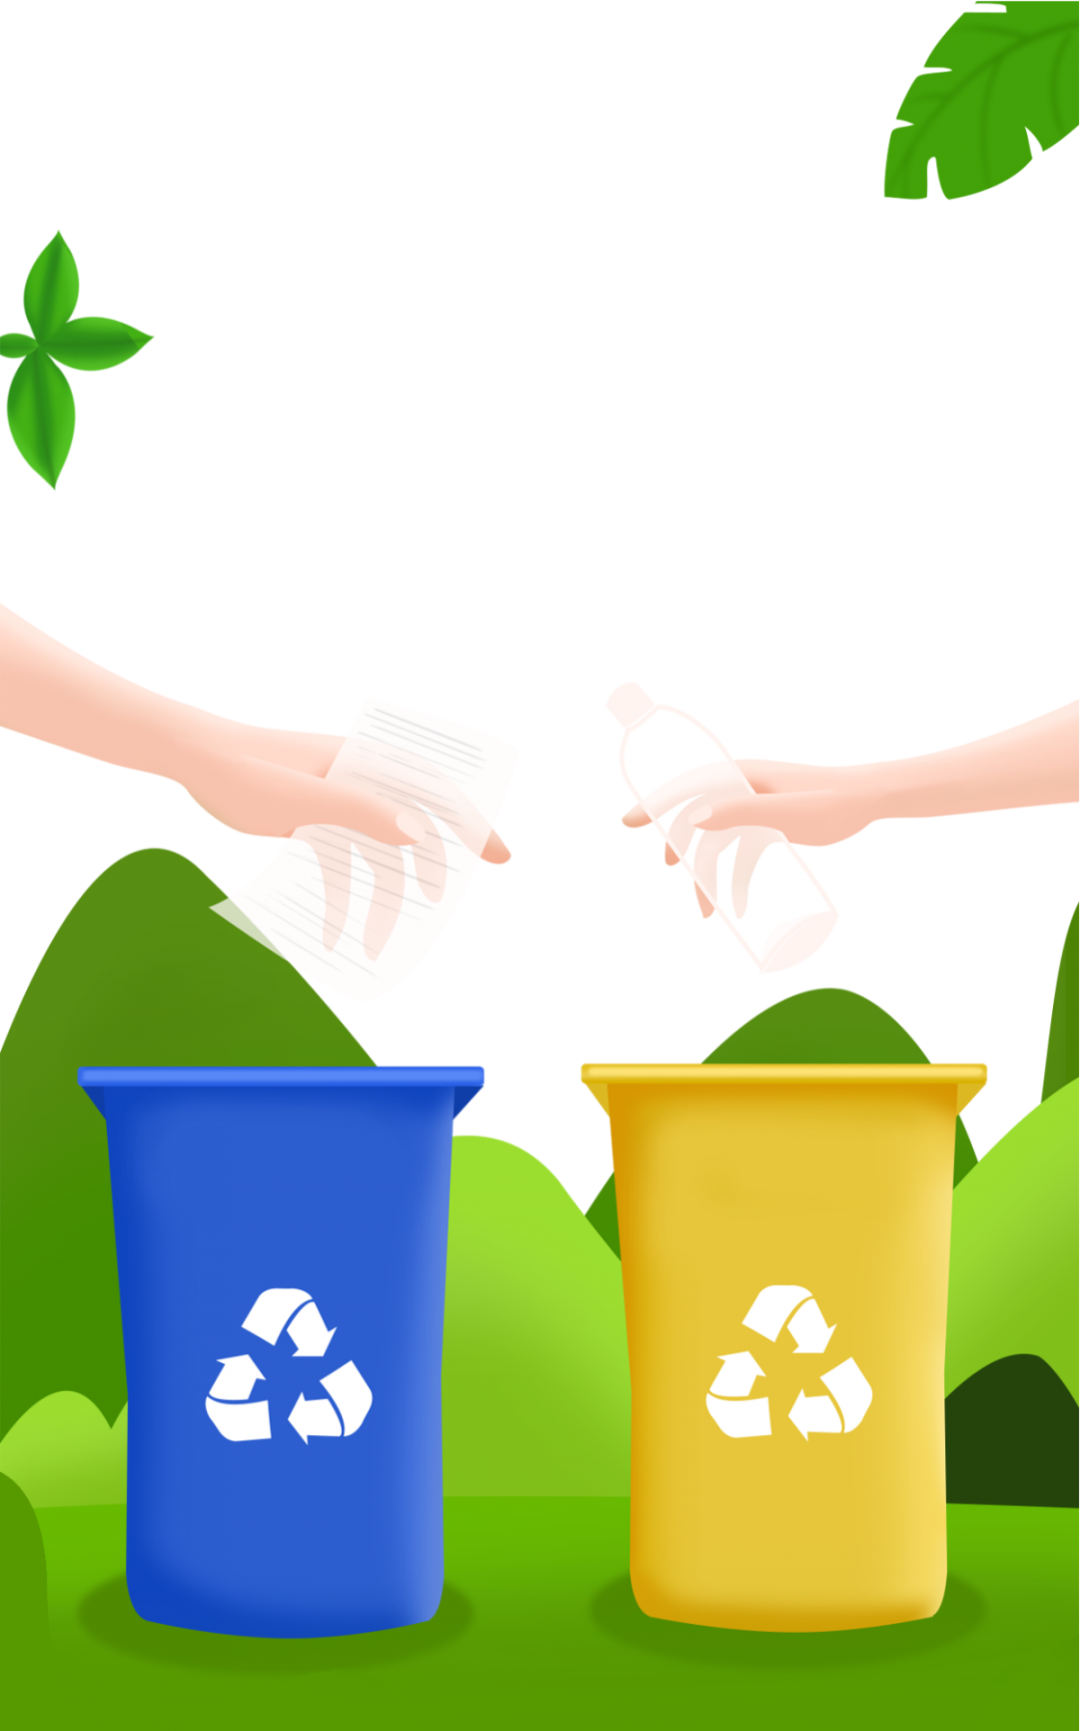 我参与我践行北大新世纪大亚湾实验学校清捡垃圾美化环境志愿服务活动